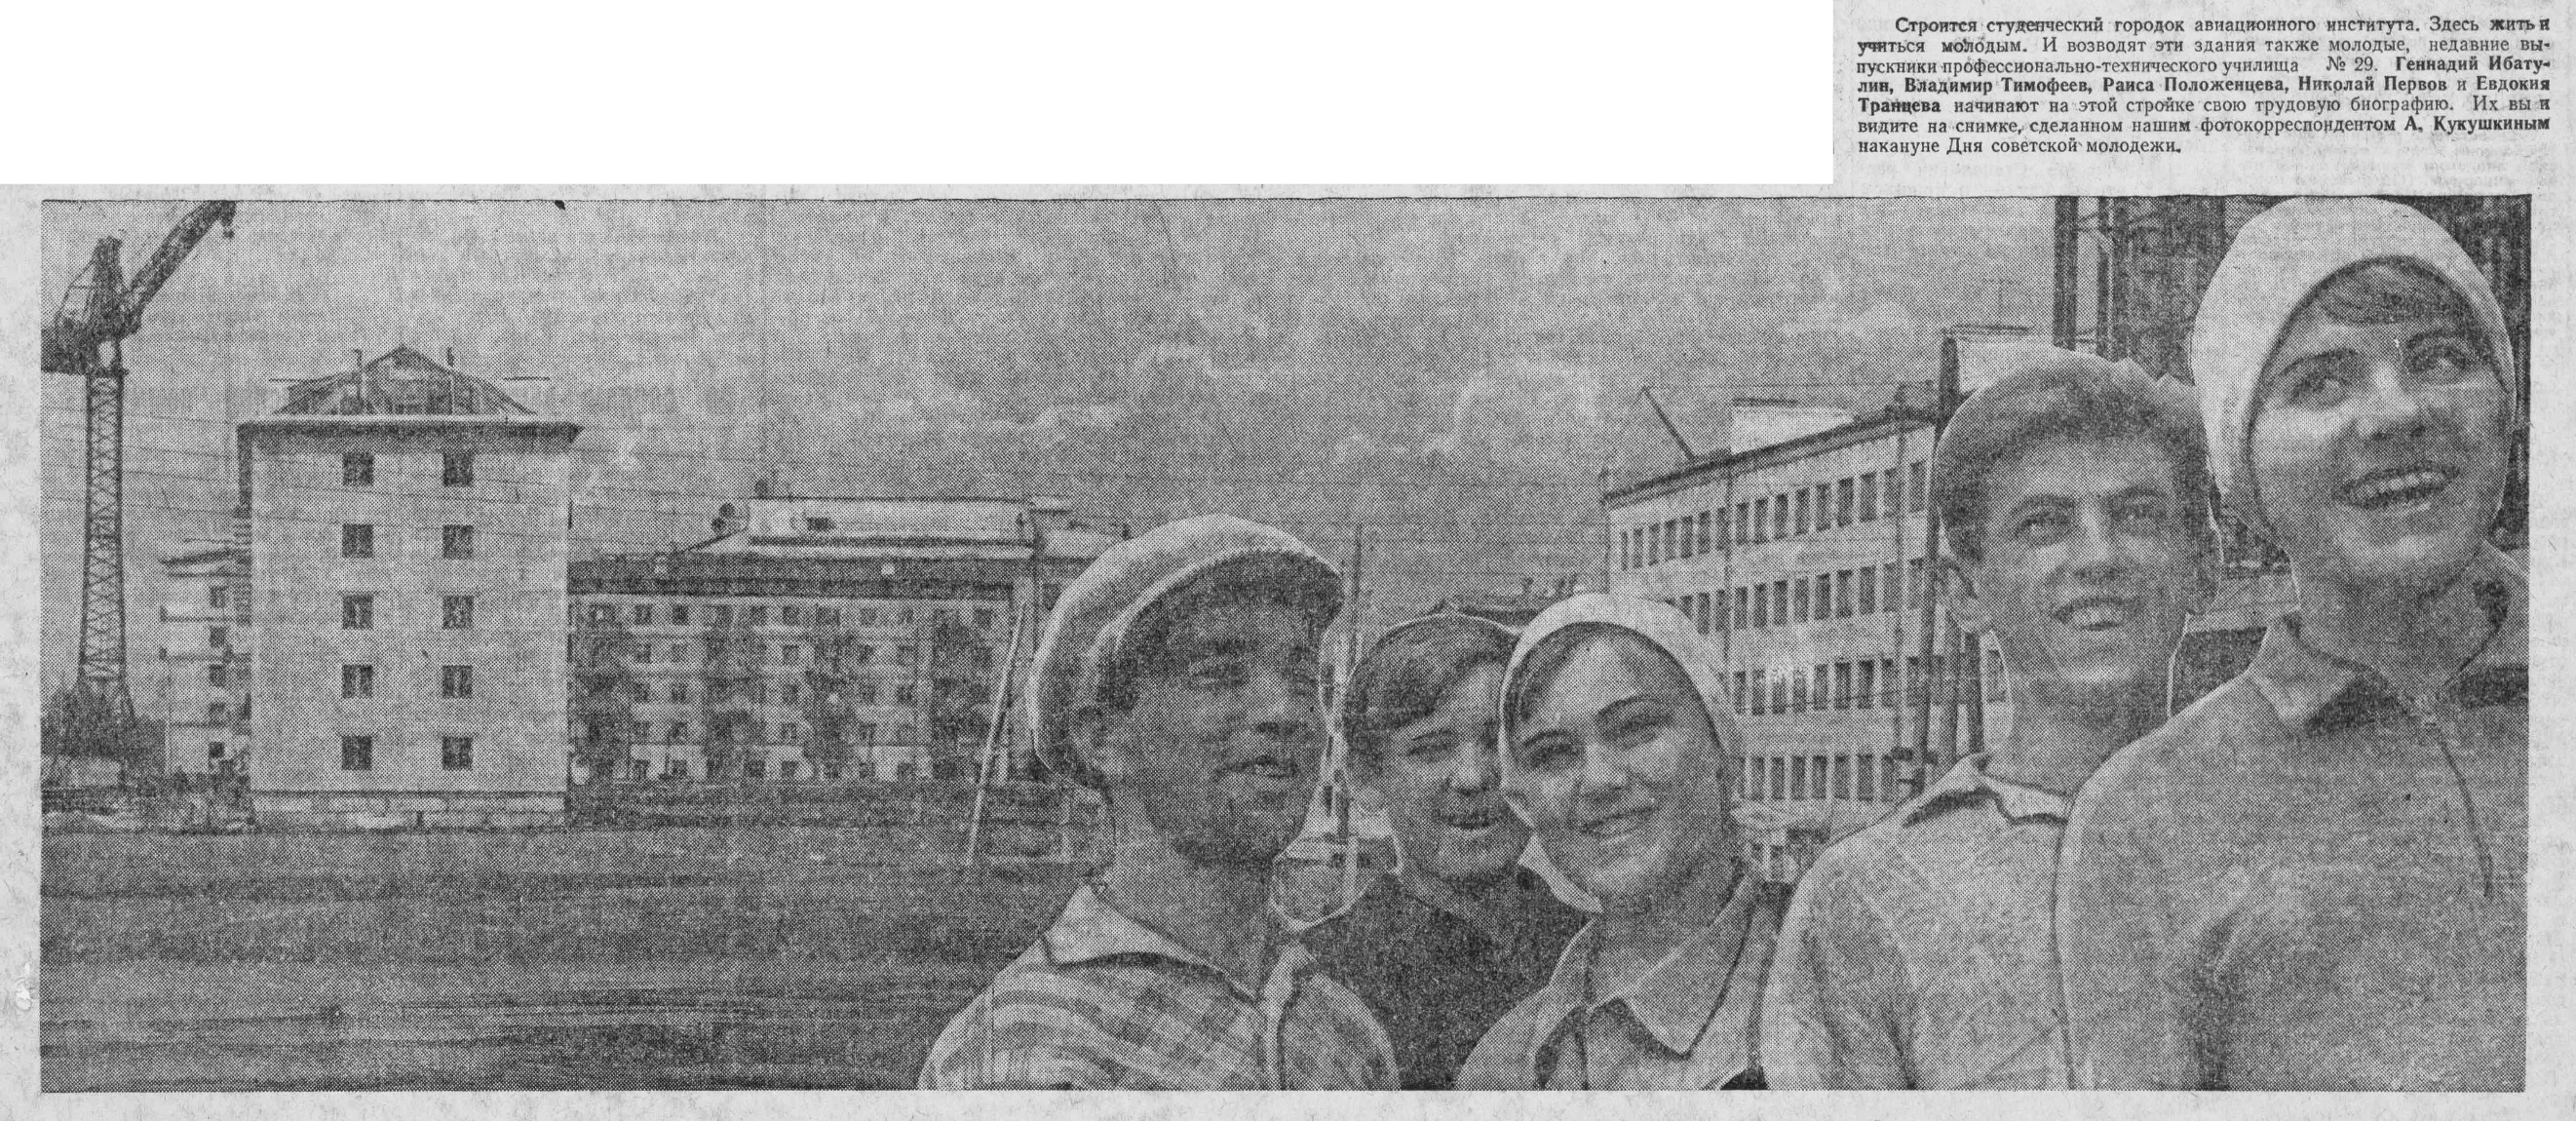 ФОТО-Лукачёва-16-ВКа-1966-06-26-фото с М.ш. около КуАИ